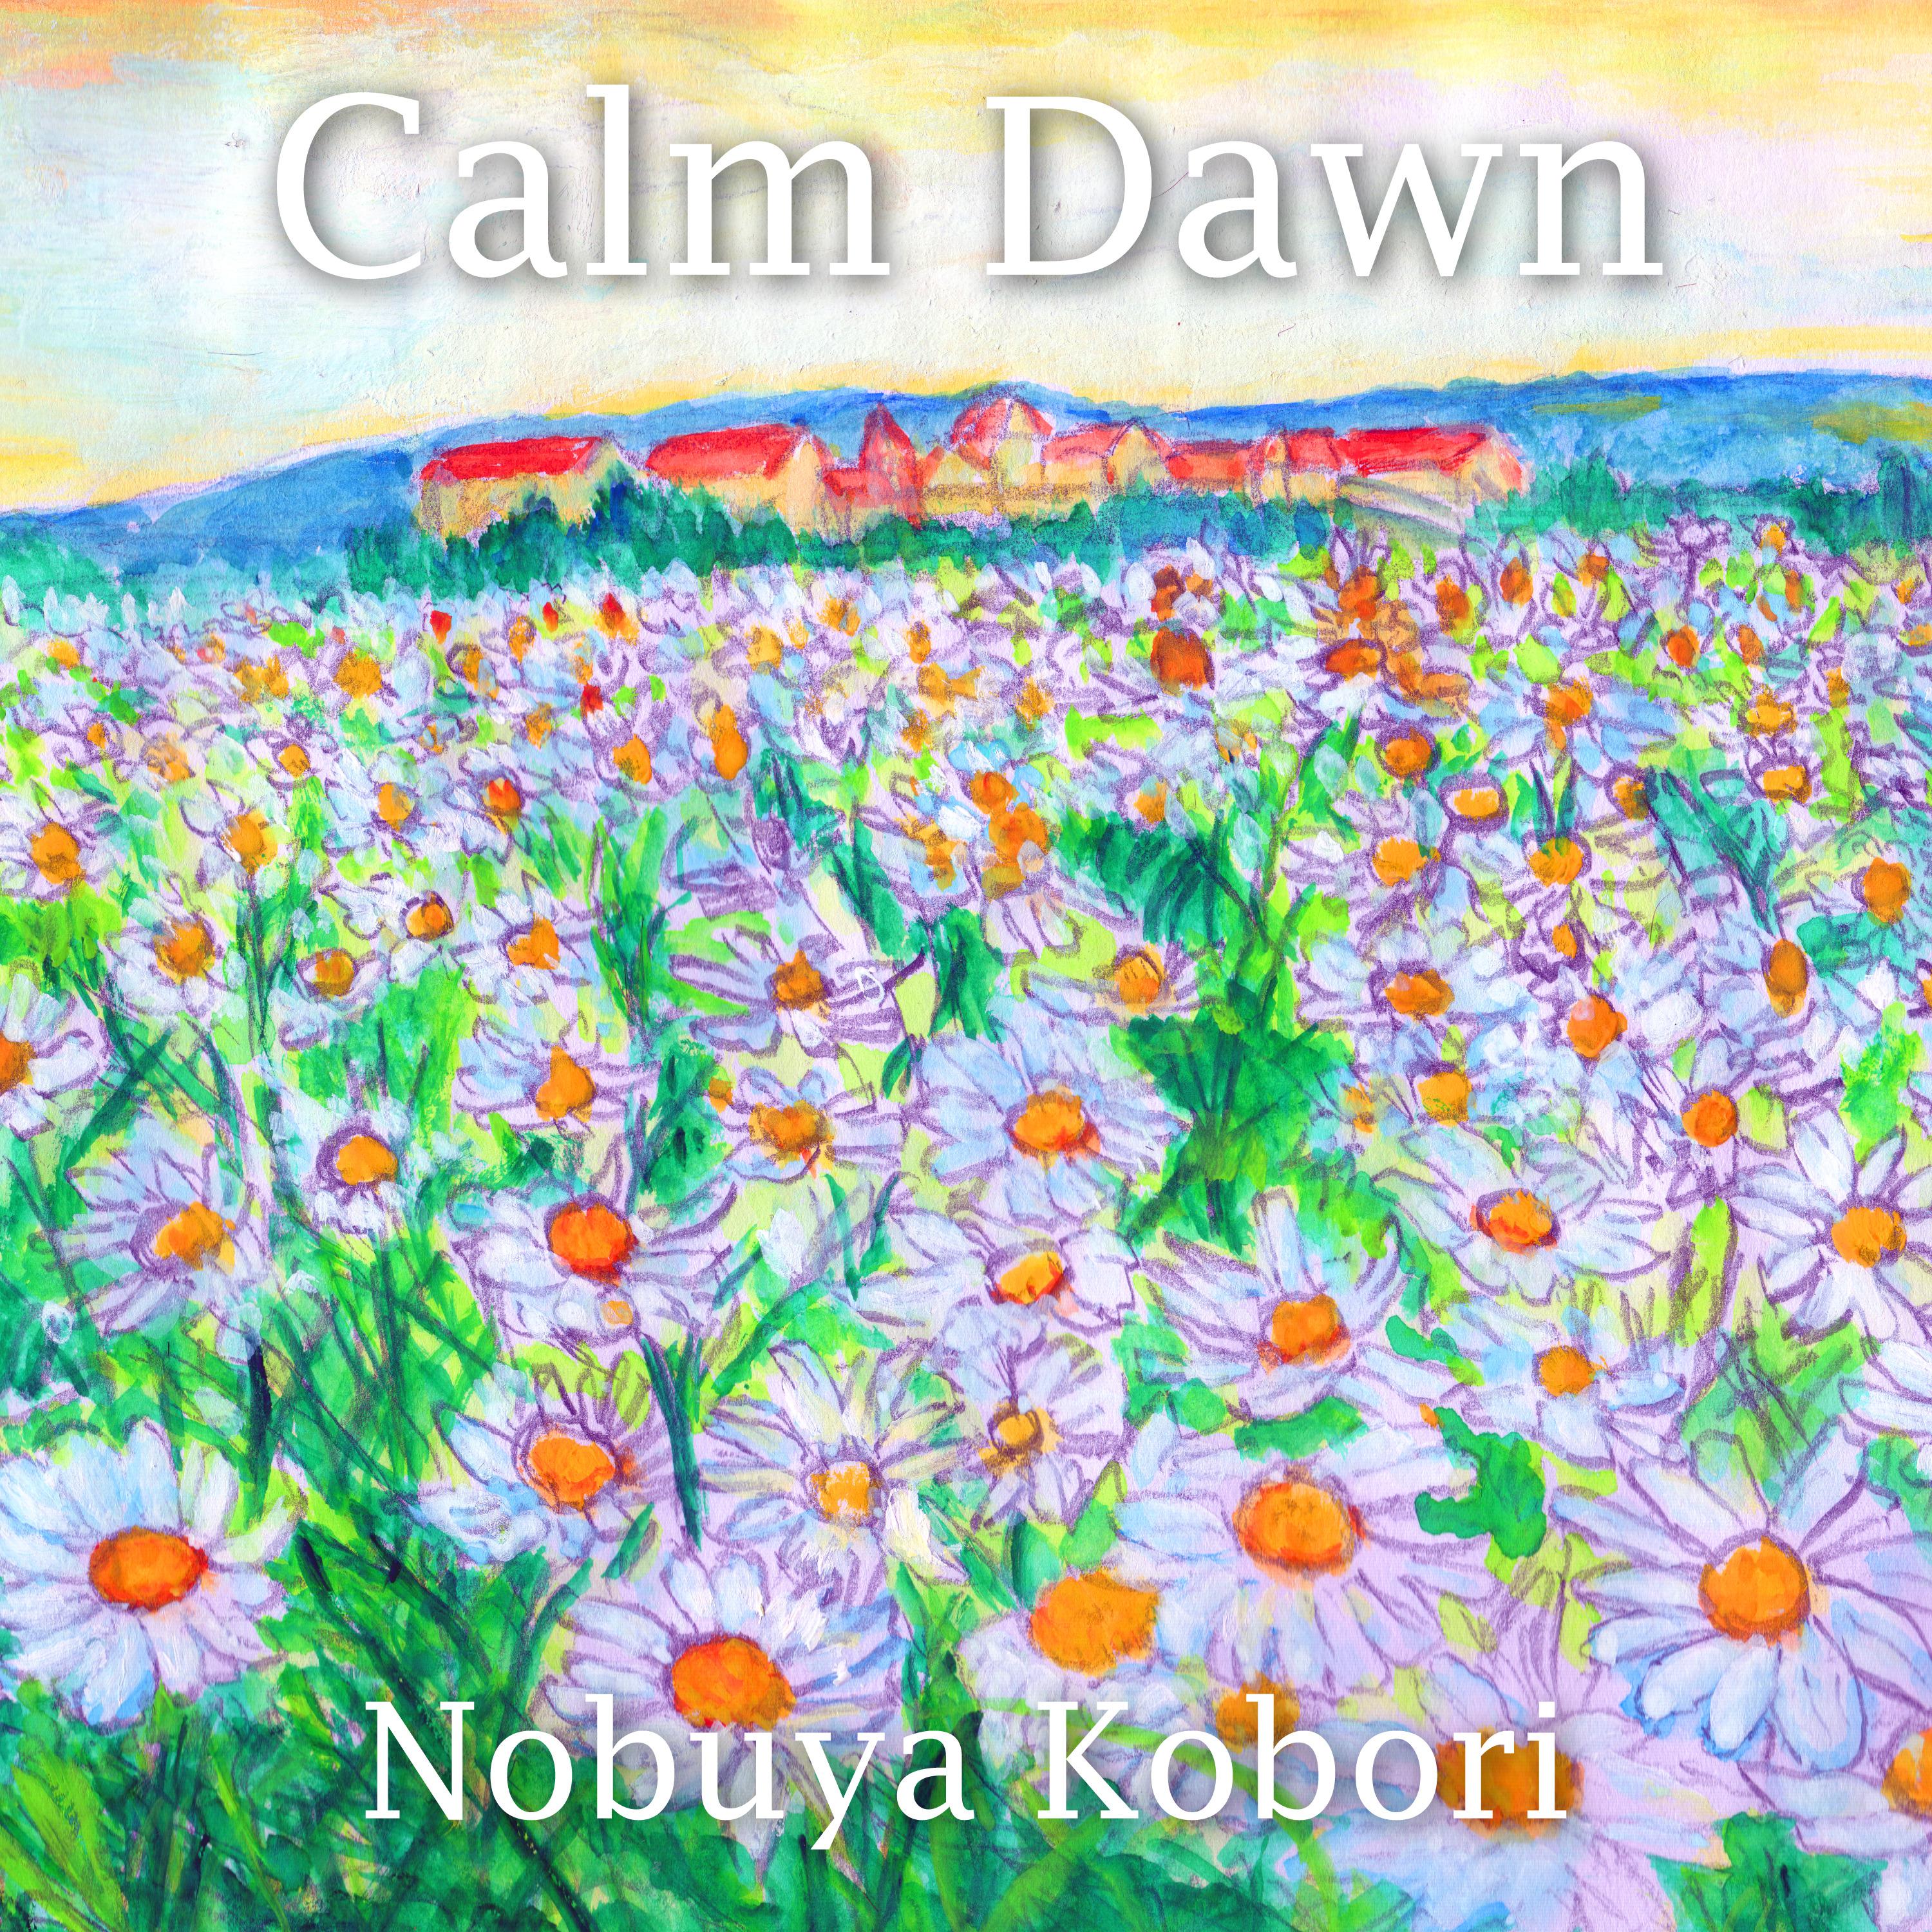 Calm Dawn